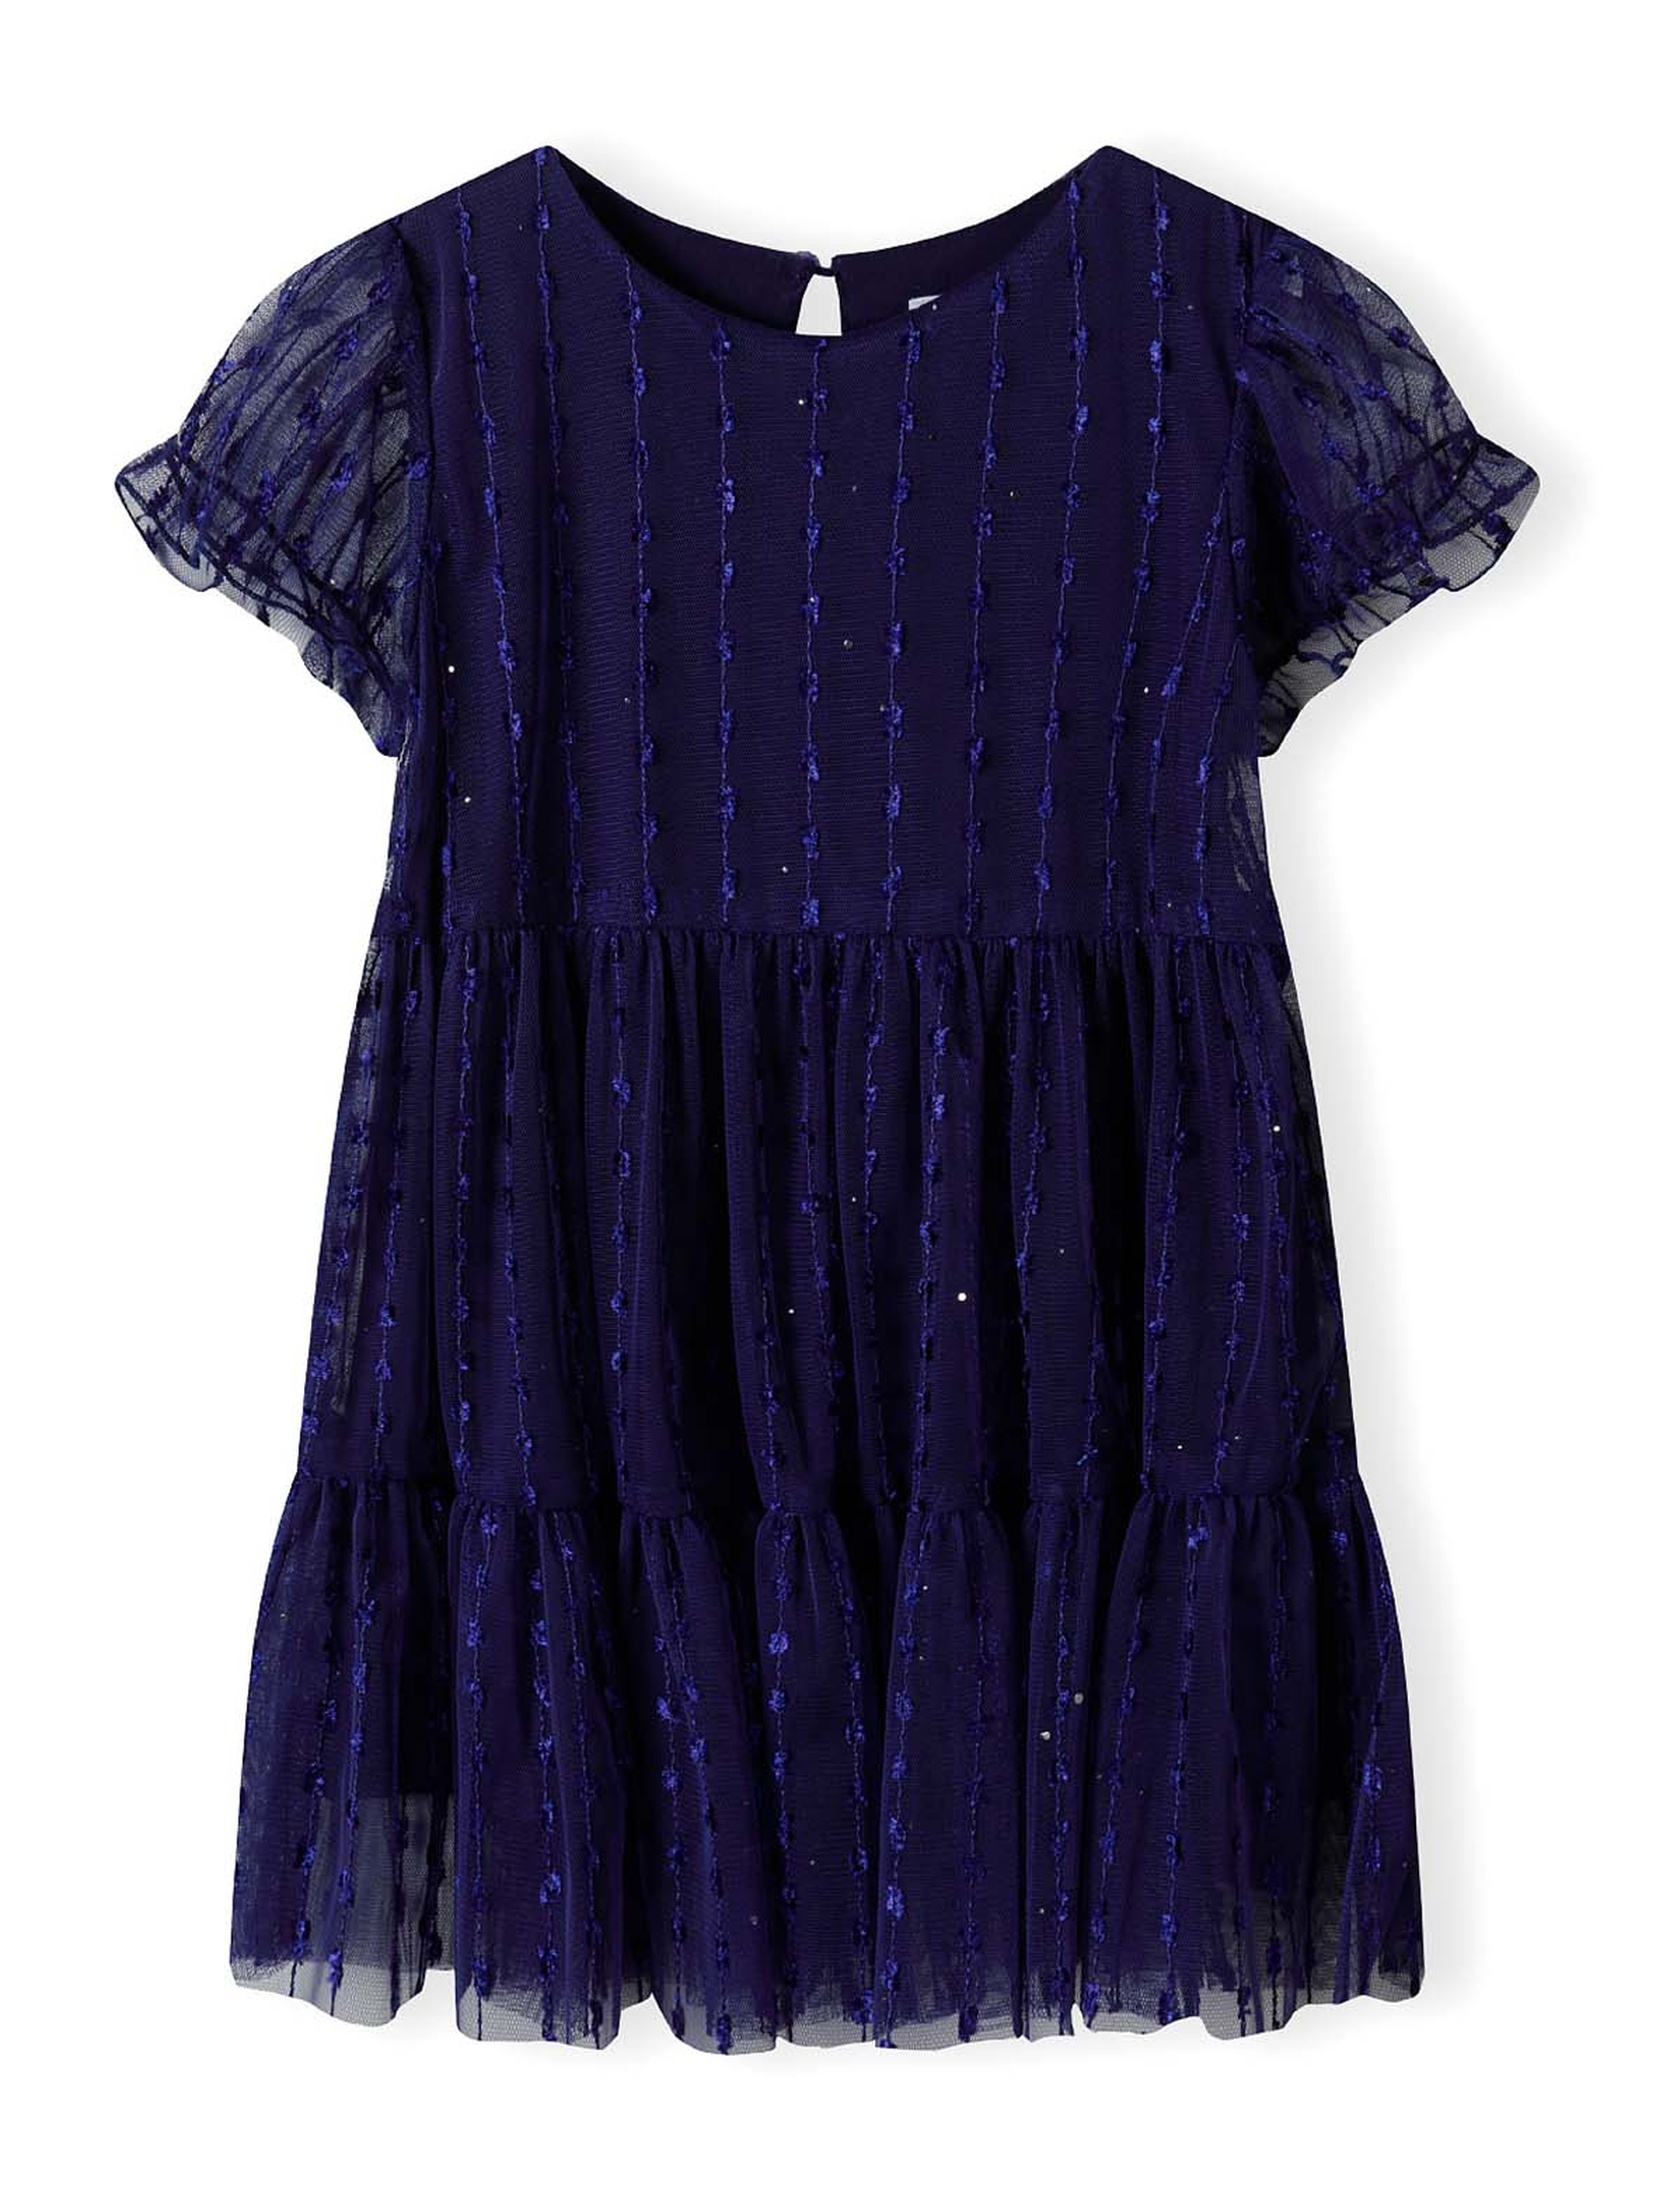 Granatowa tiulowa sukienka z błyszczącymi elementami